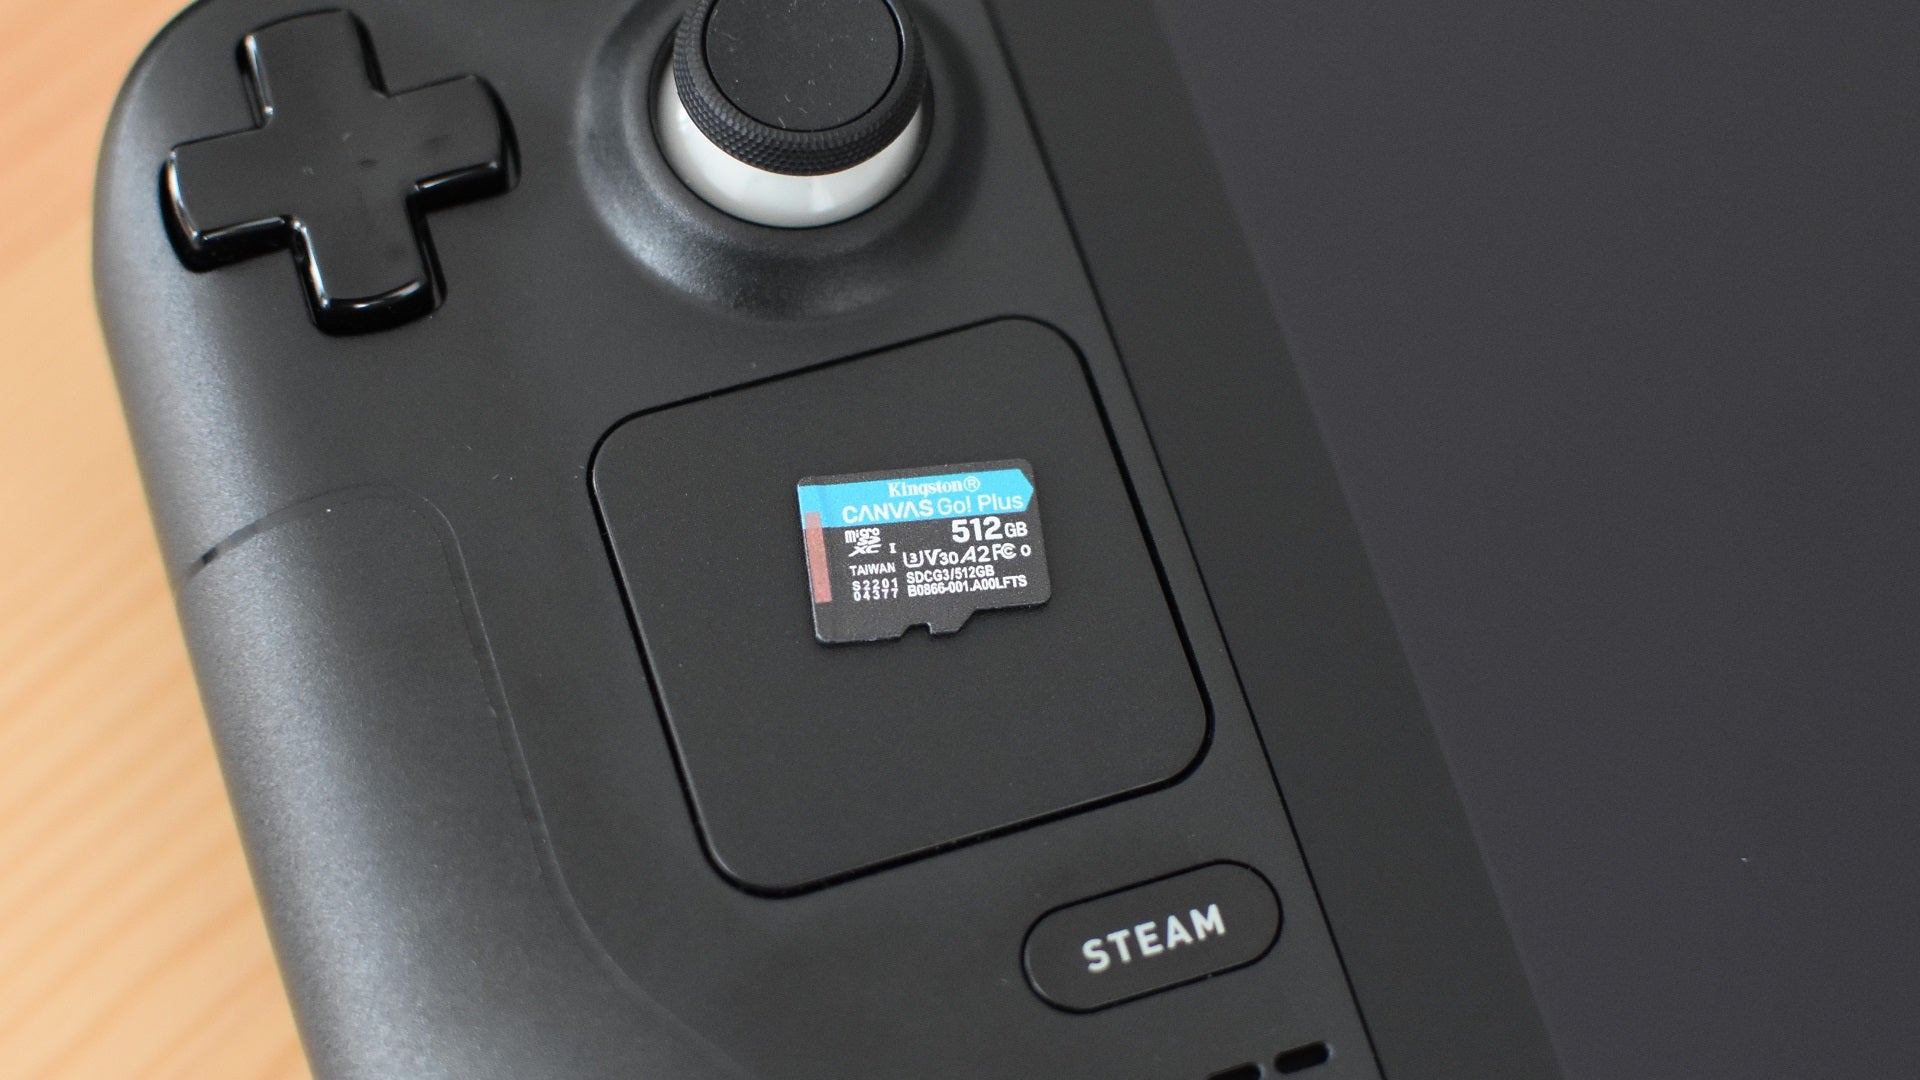 ネットワーク全体の最低価格に挑戦ネットワーク全体の最低価格に挑戦steamdeck 256GB 512 MicroSD カード Dock  家庭用ゲーム本体